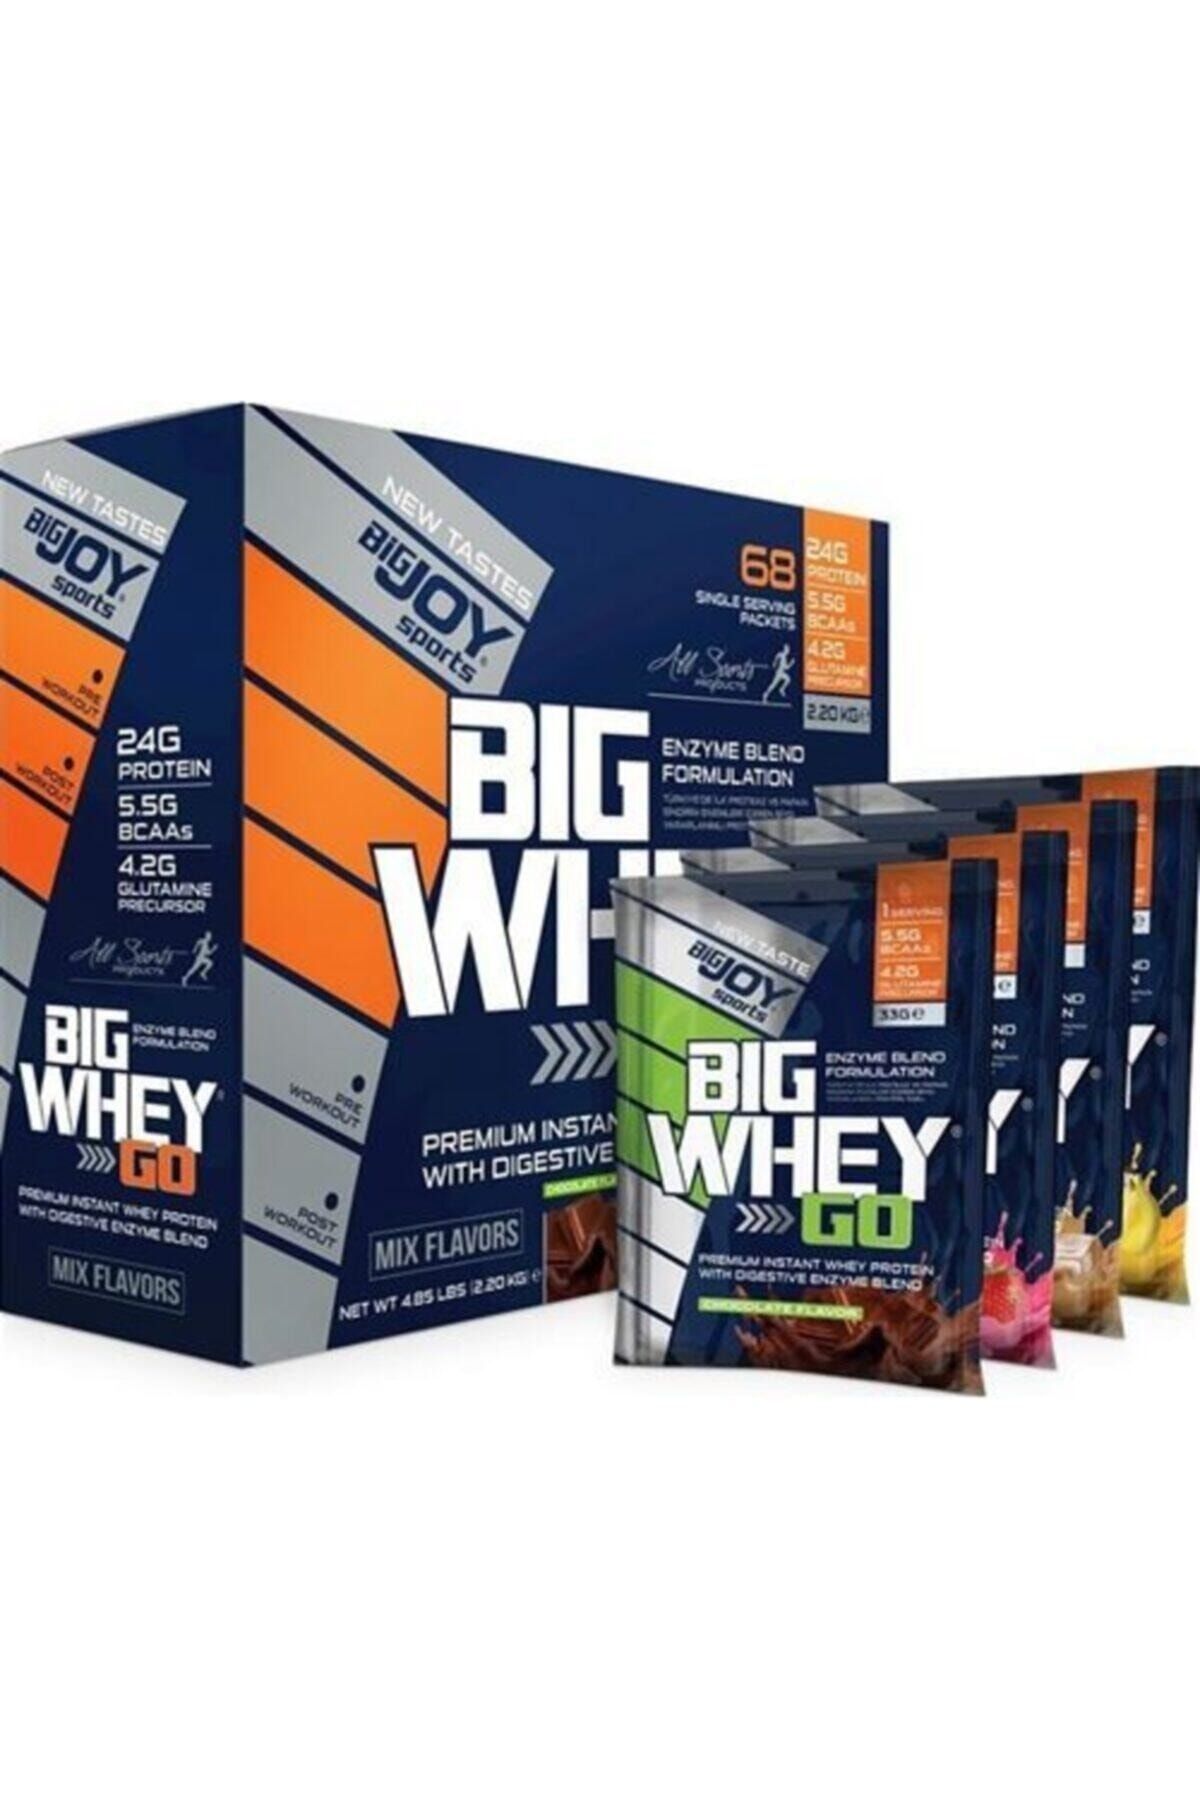 Bigjoy Sports Big Whey 68 Paket 2244gr